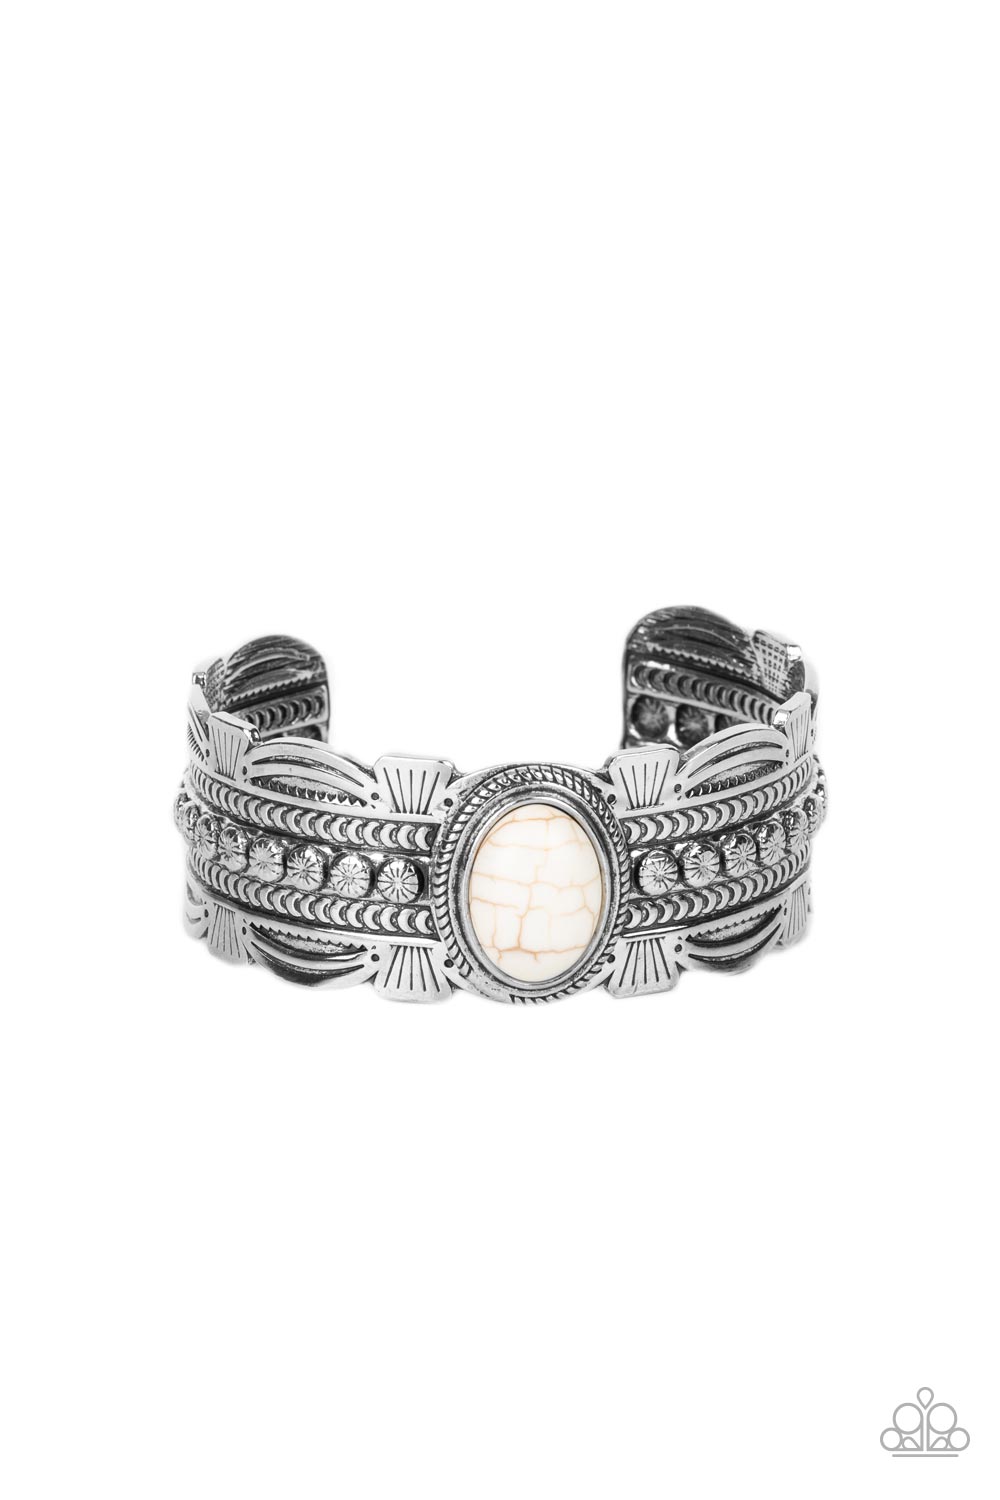 Desert Stroll - white - Paparazzi bracelet